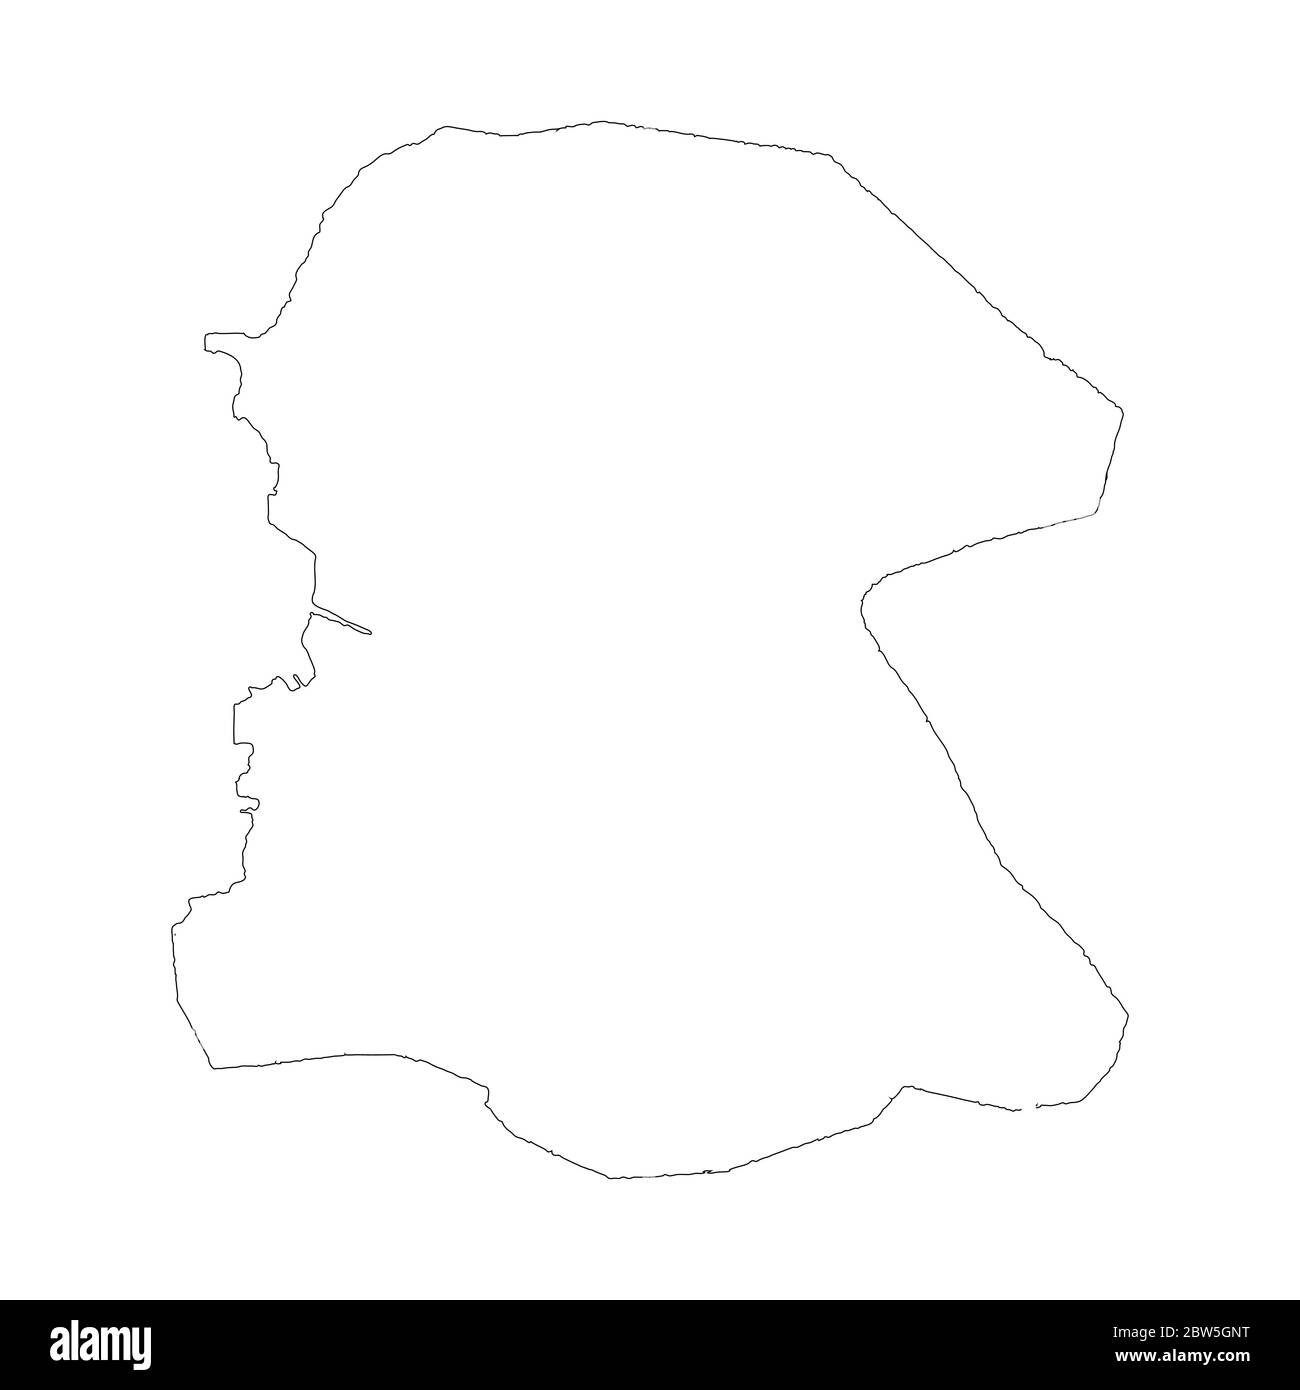 Mappa vettoriale Port au Prince. Illustrazione vettoriale isolata. Contorno. Illustrazione EPS 10. Illustrazione Vettoriale